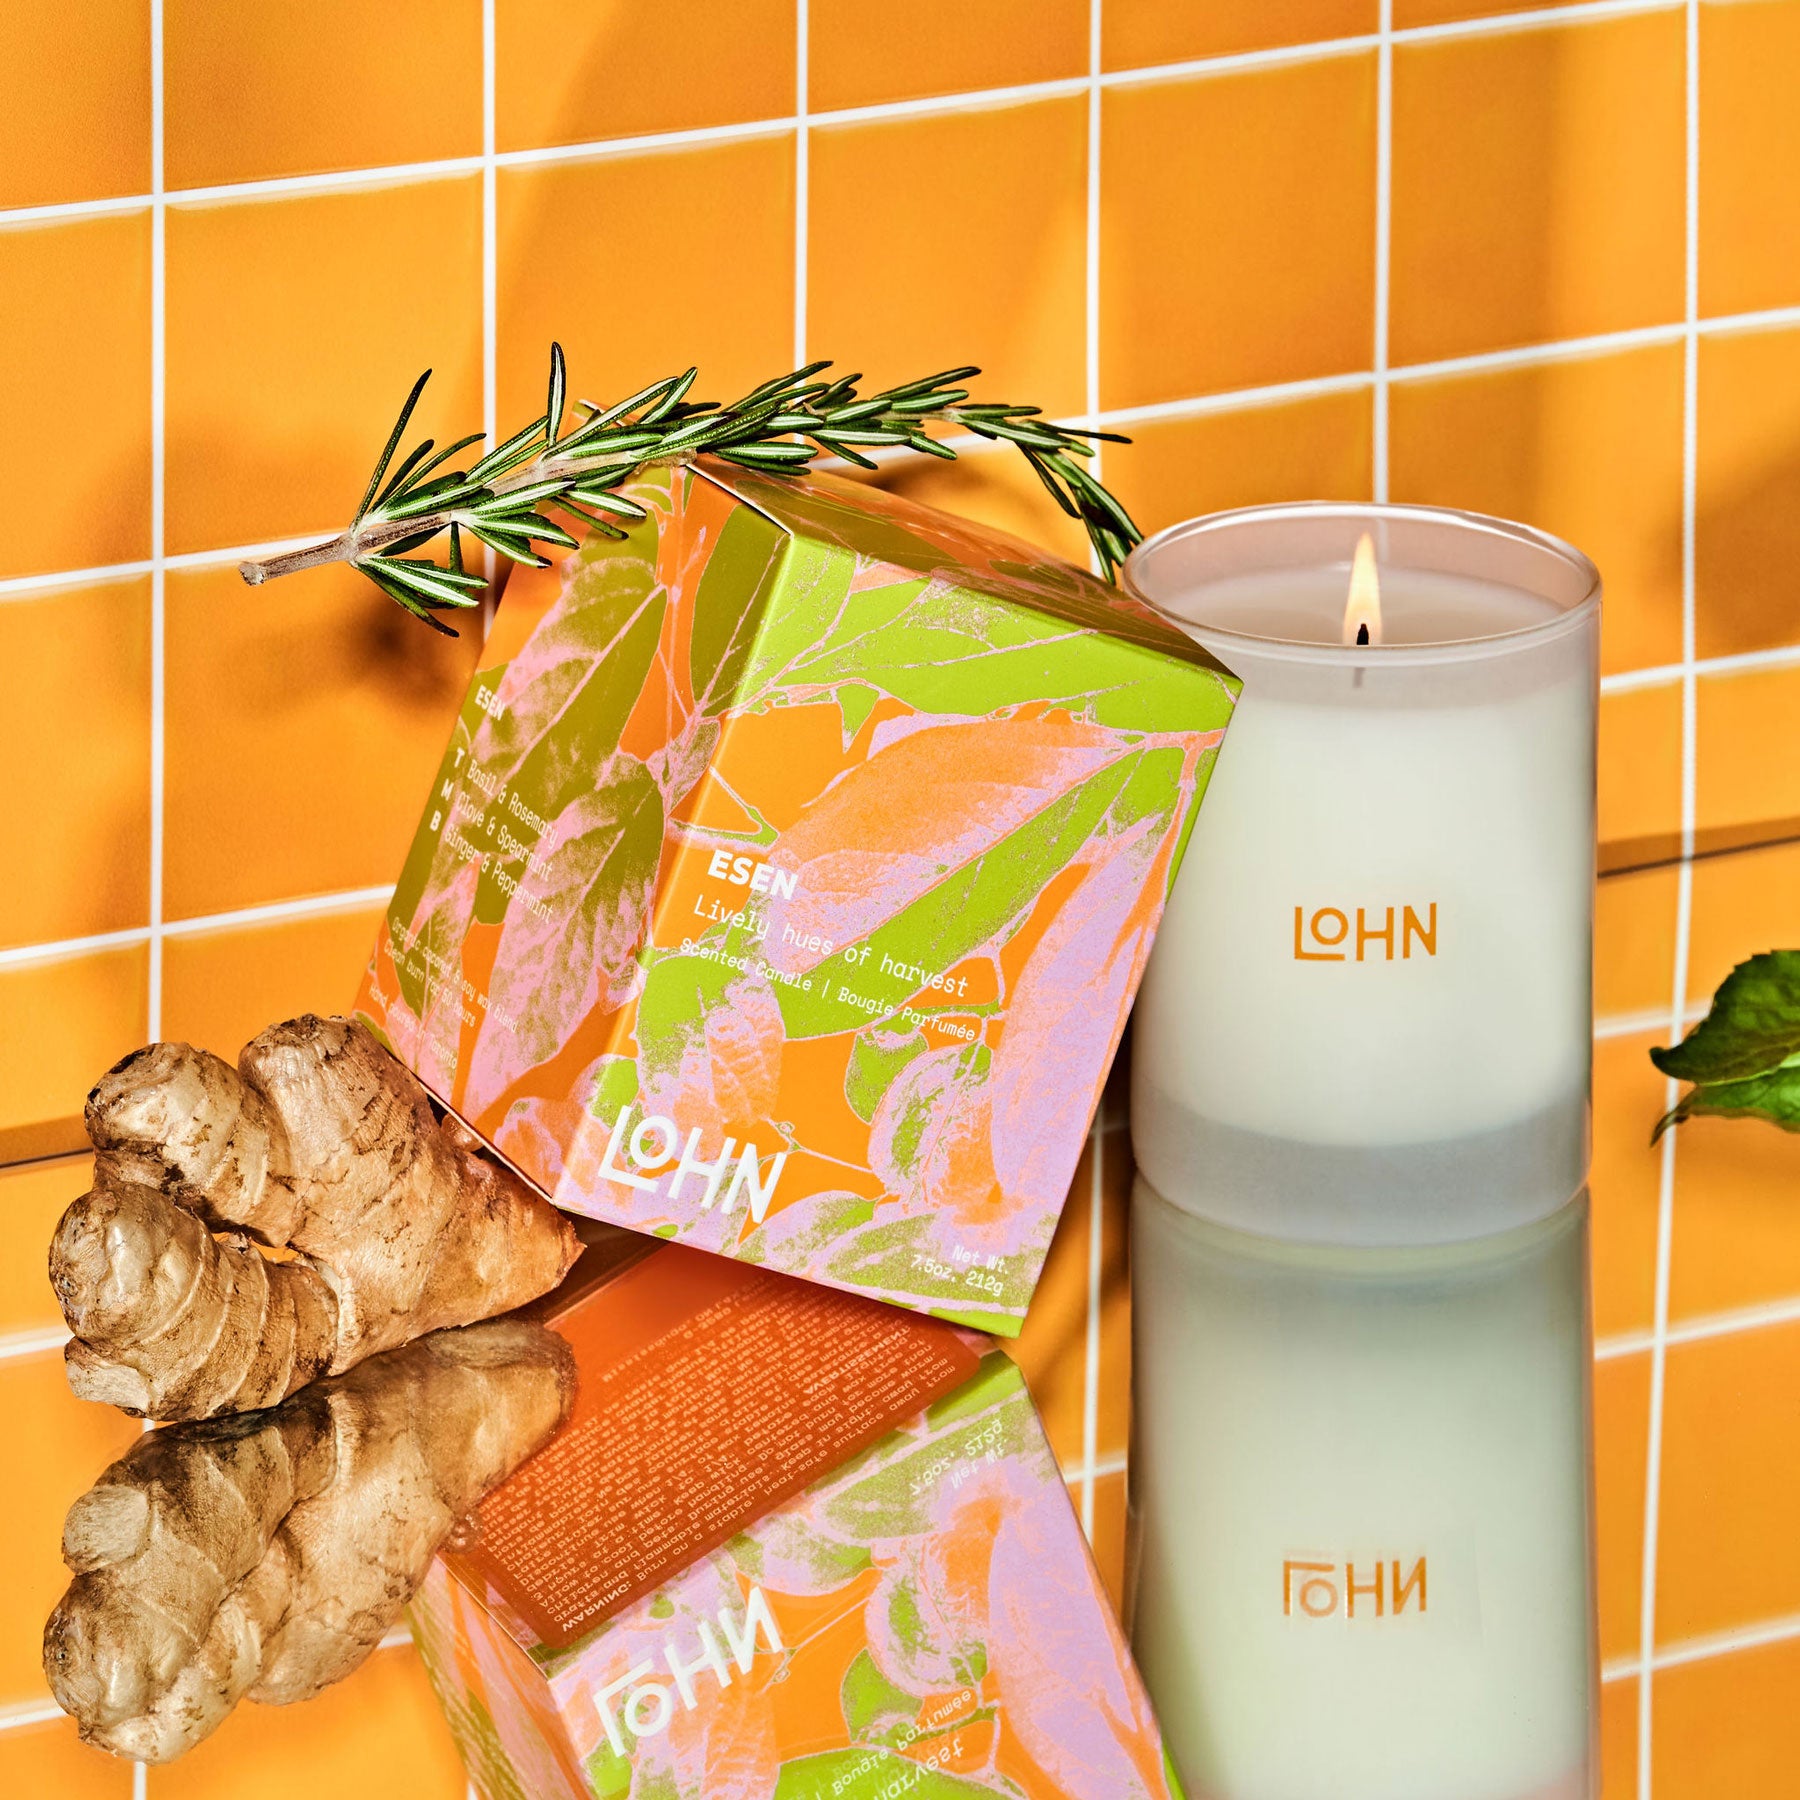 Lohn Candle - ESEN - Basil & Mint